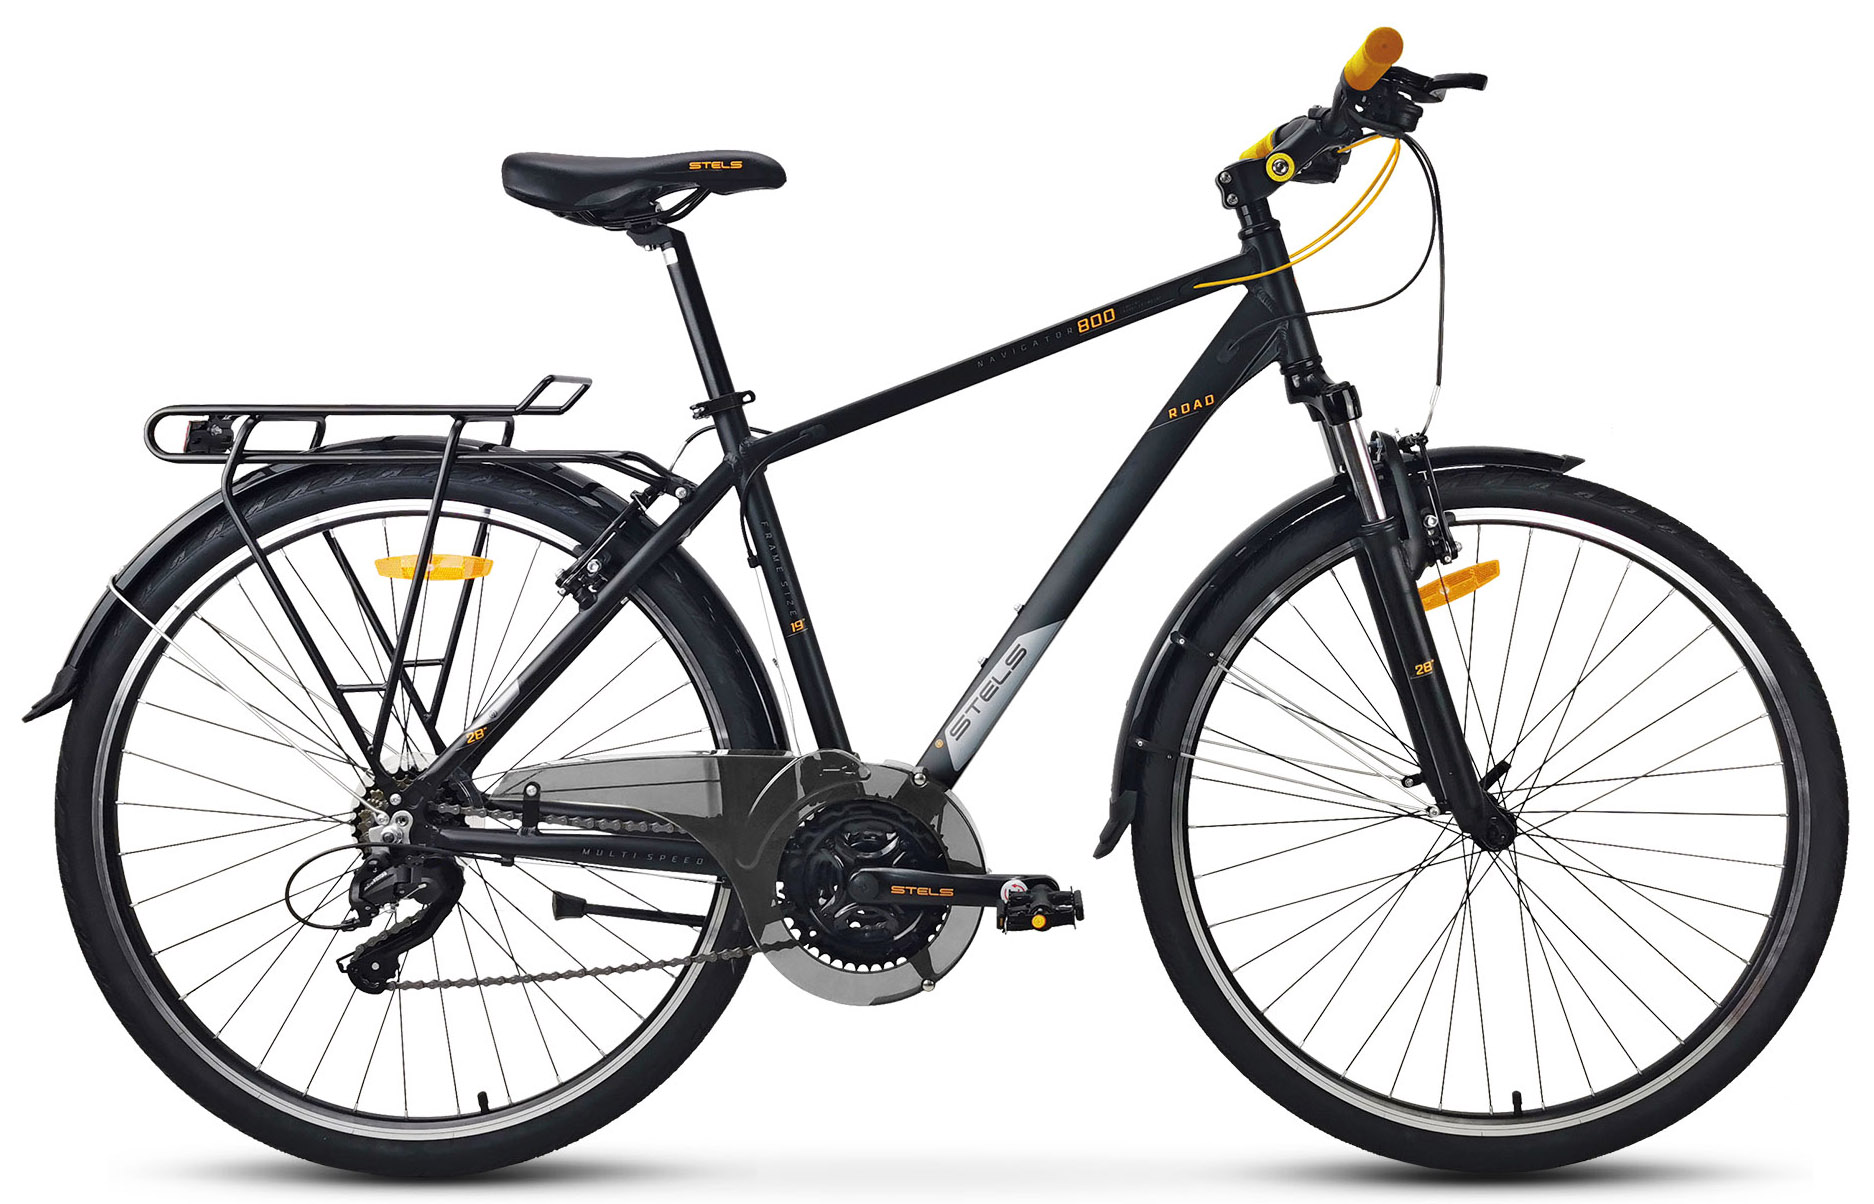  Отзывы о Городском велосипеде Stels Navigator 800 Gent V010 (2021) 2021